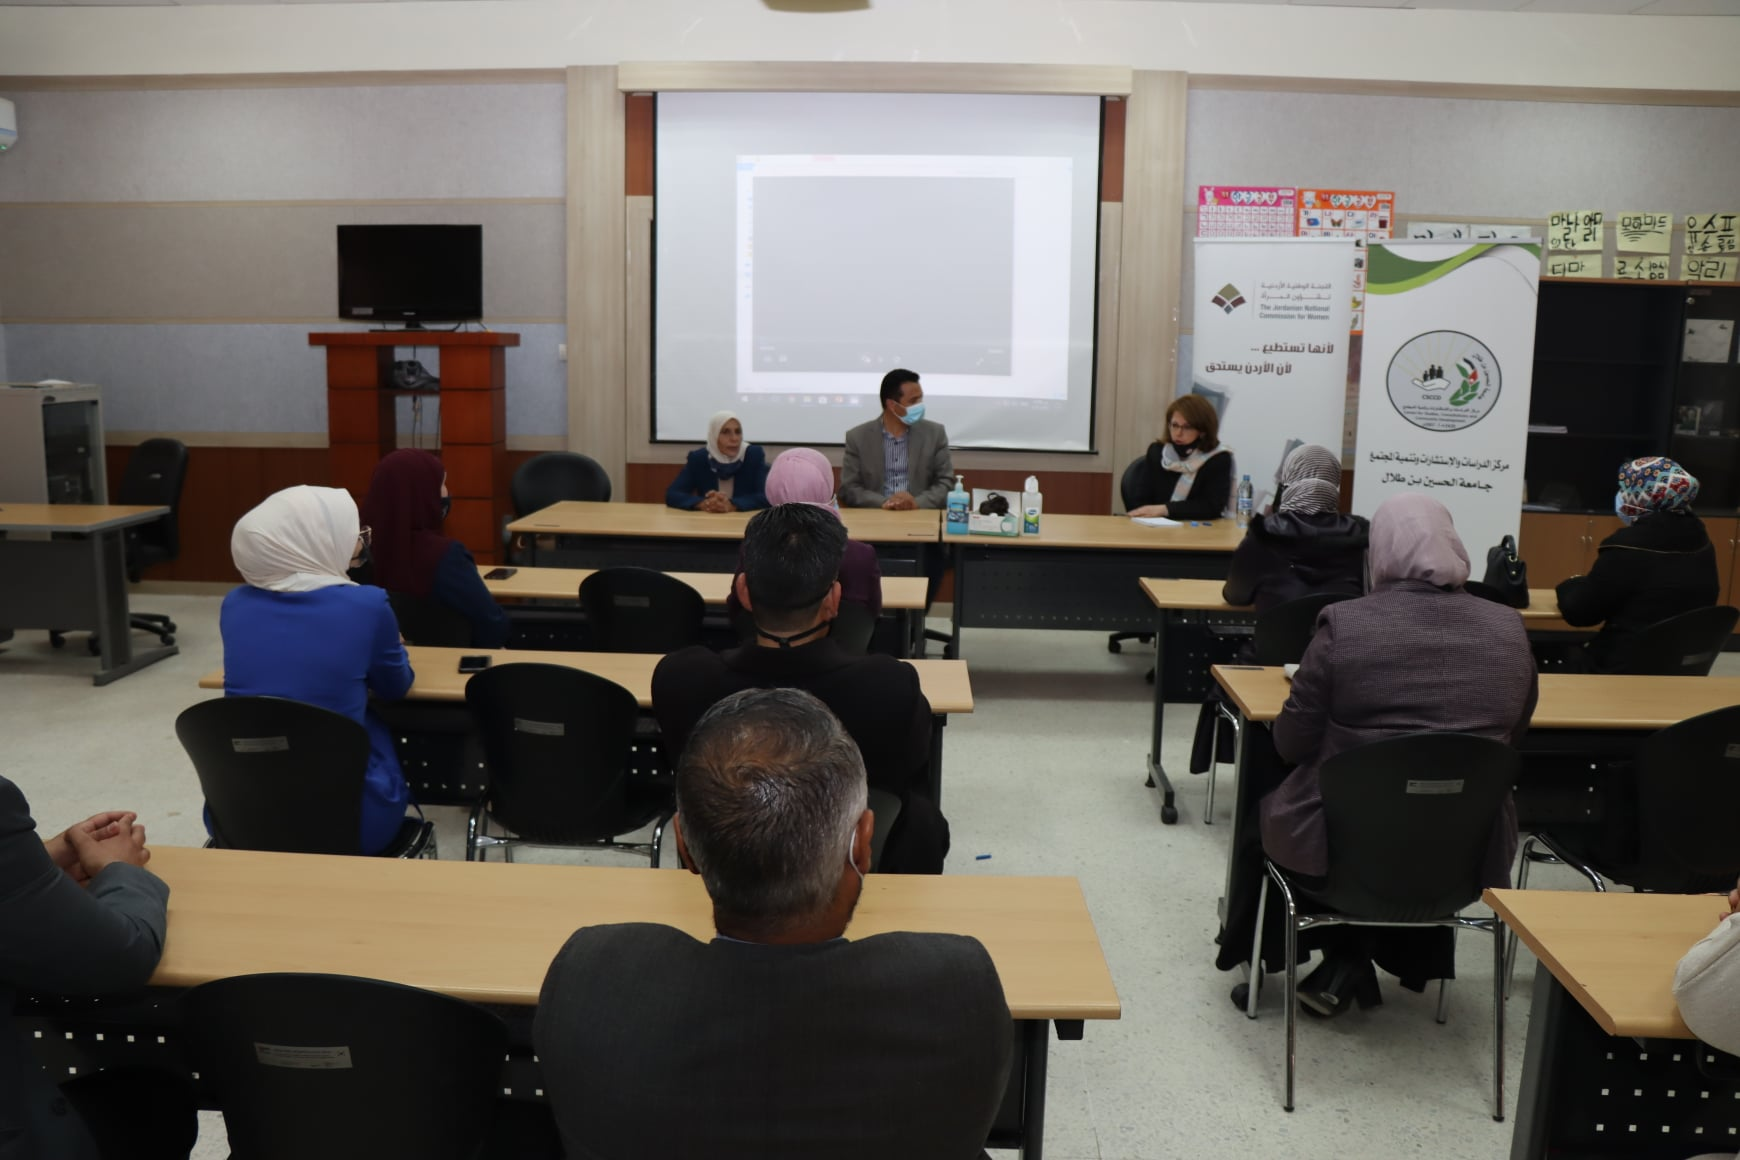  جامعة الحسين بن طلال تستضيف الإجتماع الأول لبرنامج التوجيه المكثف